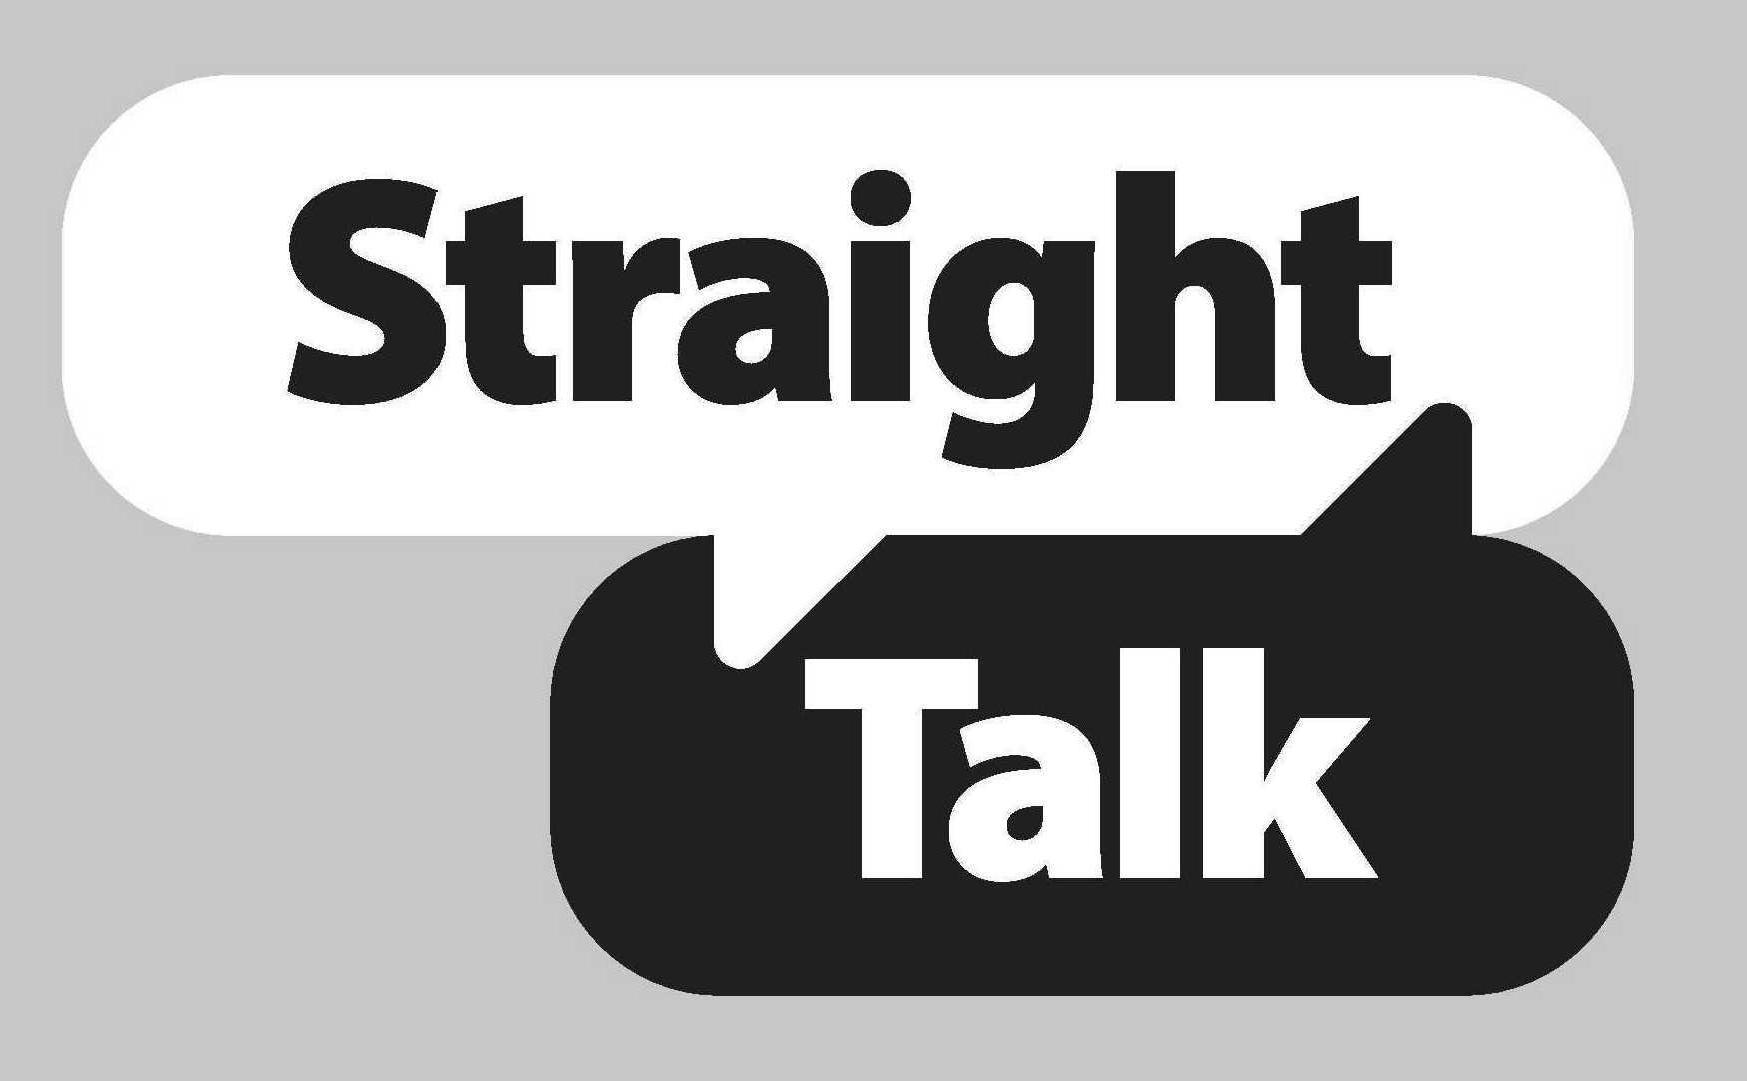 Trademark Logo STRAIGHT TALK